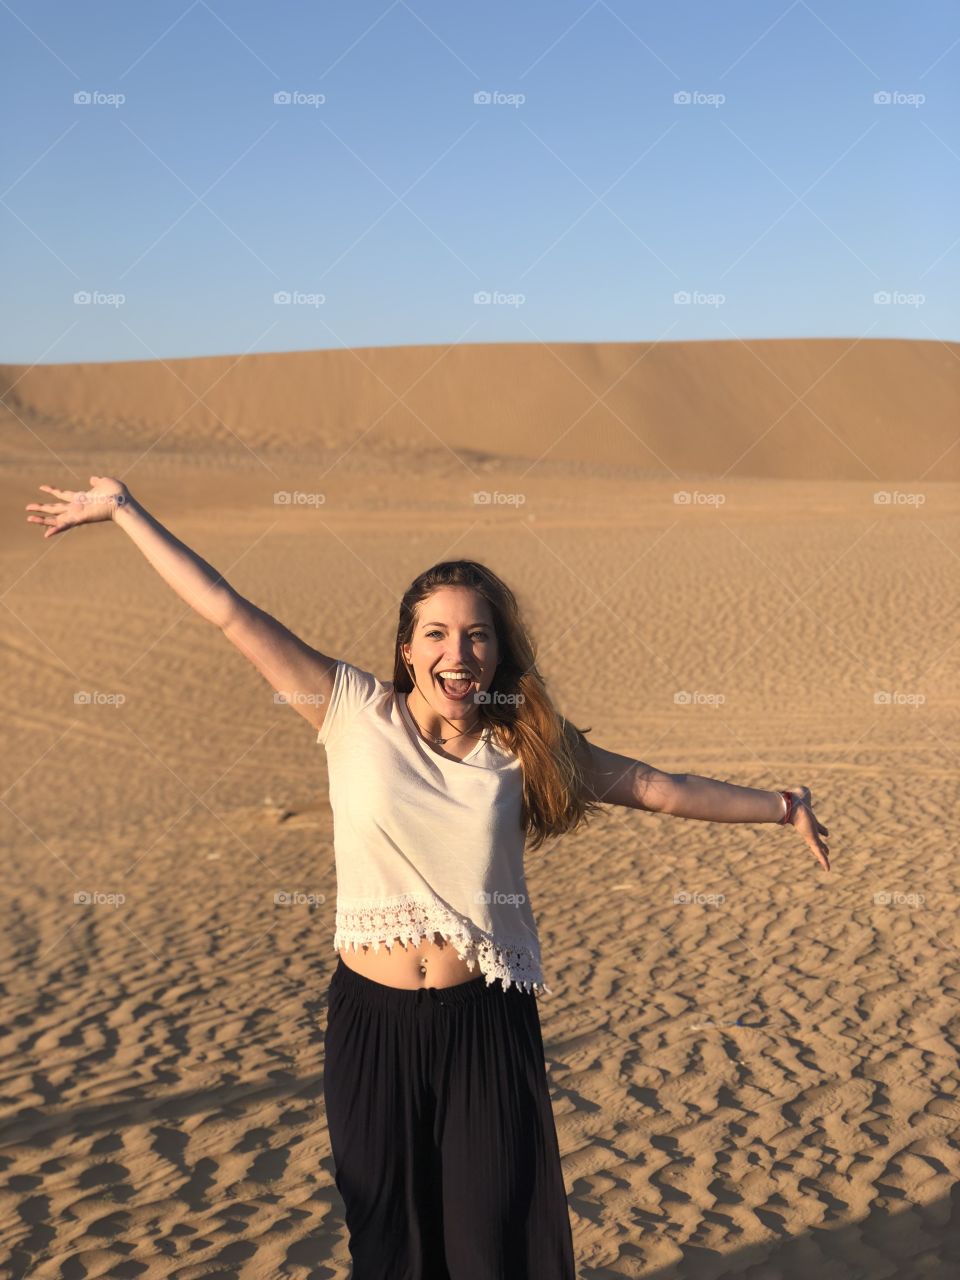 Fun in the desert dunes - Dubai, UAE